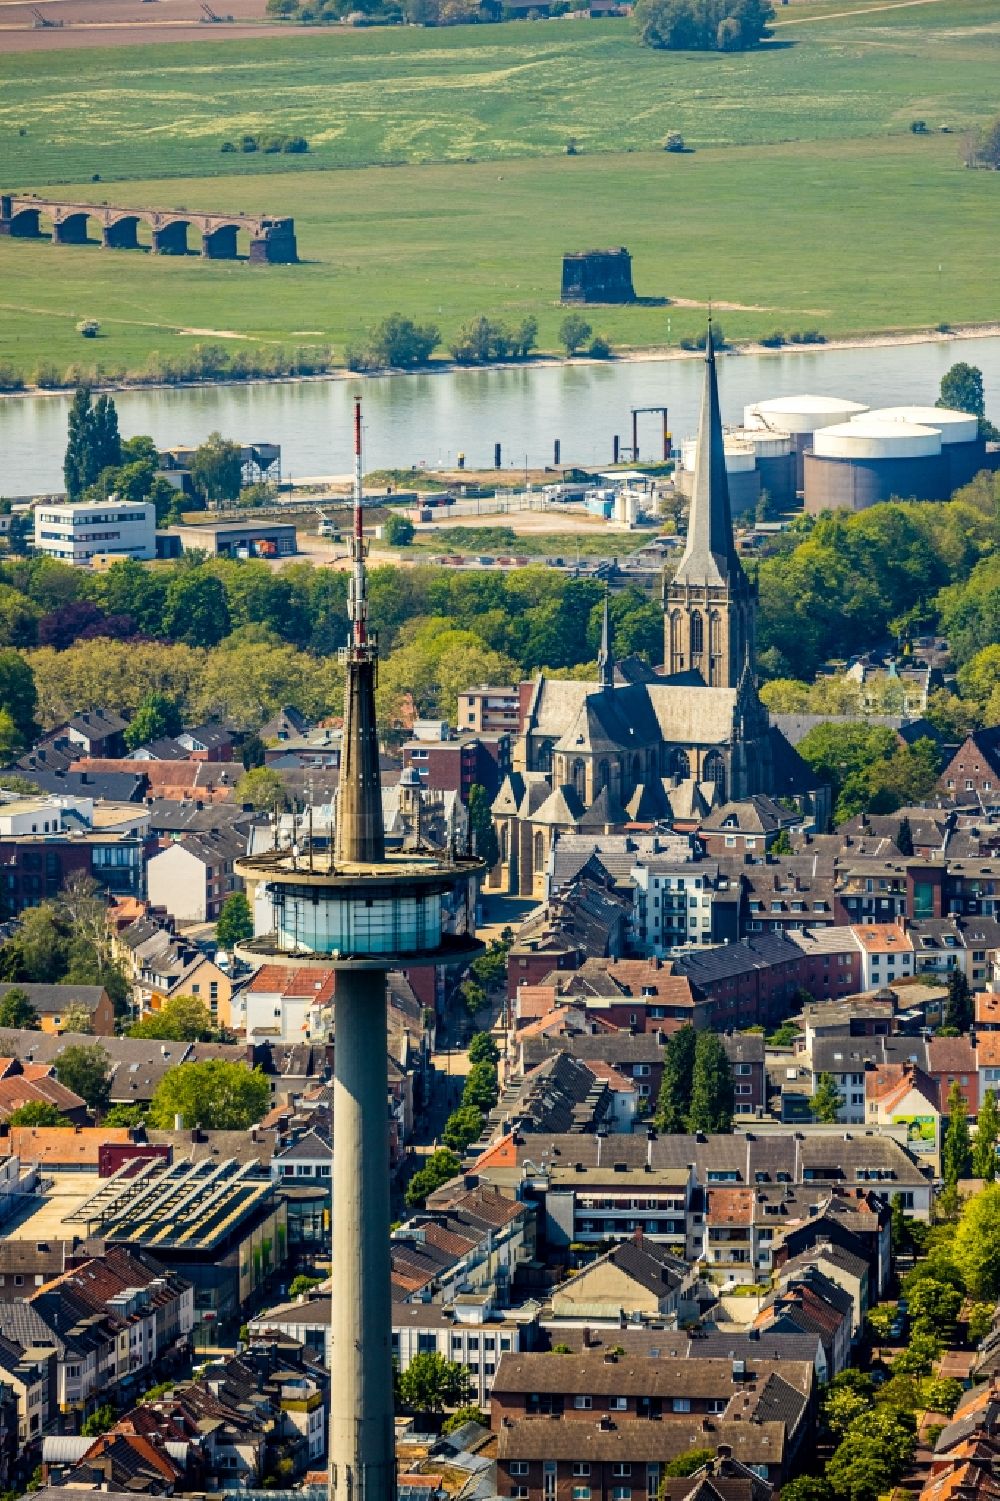 Luftbild Wesel - Fernmeldeturm und Fernsehturm im Ortsteil Blumenkamp in Wesel im Bundesland Nordrhein-Westfalen, Deutschland